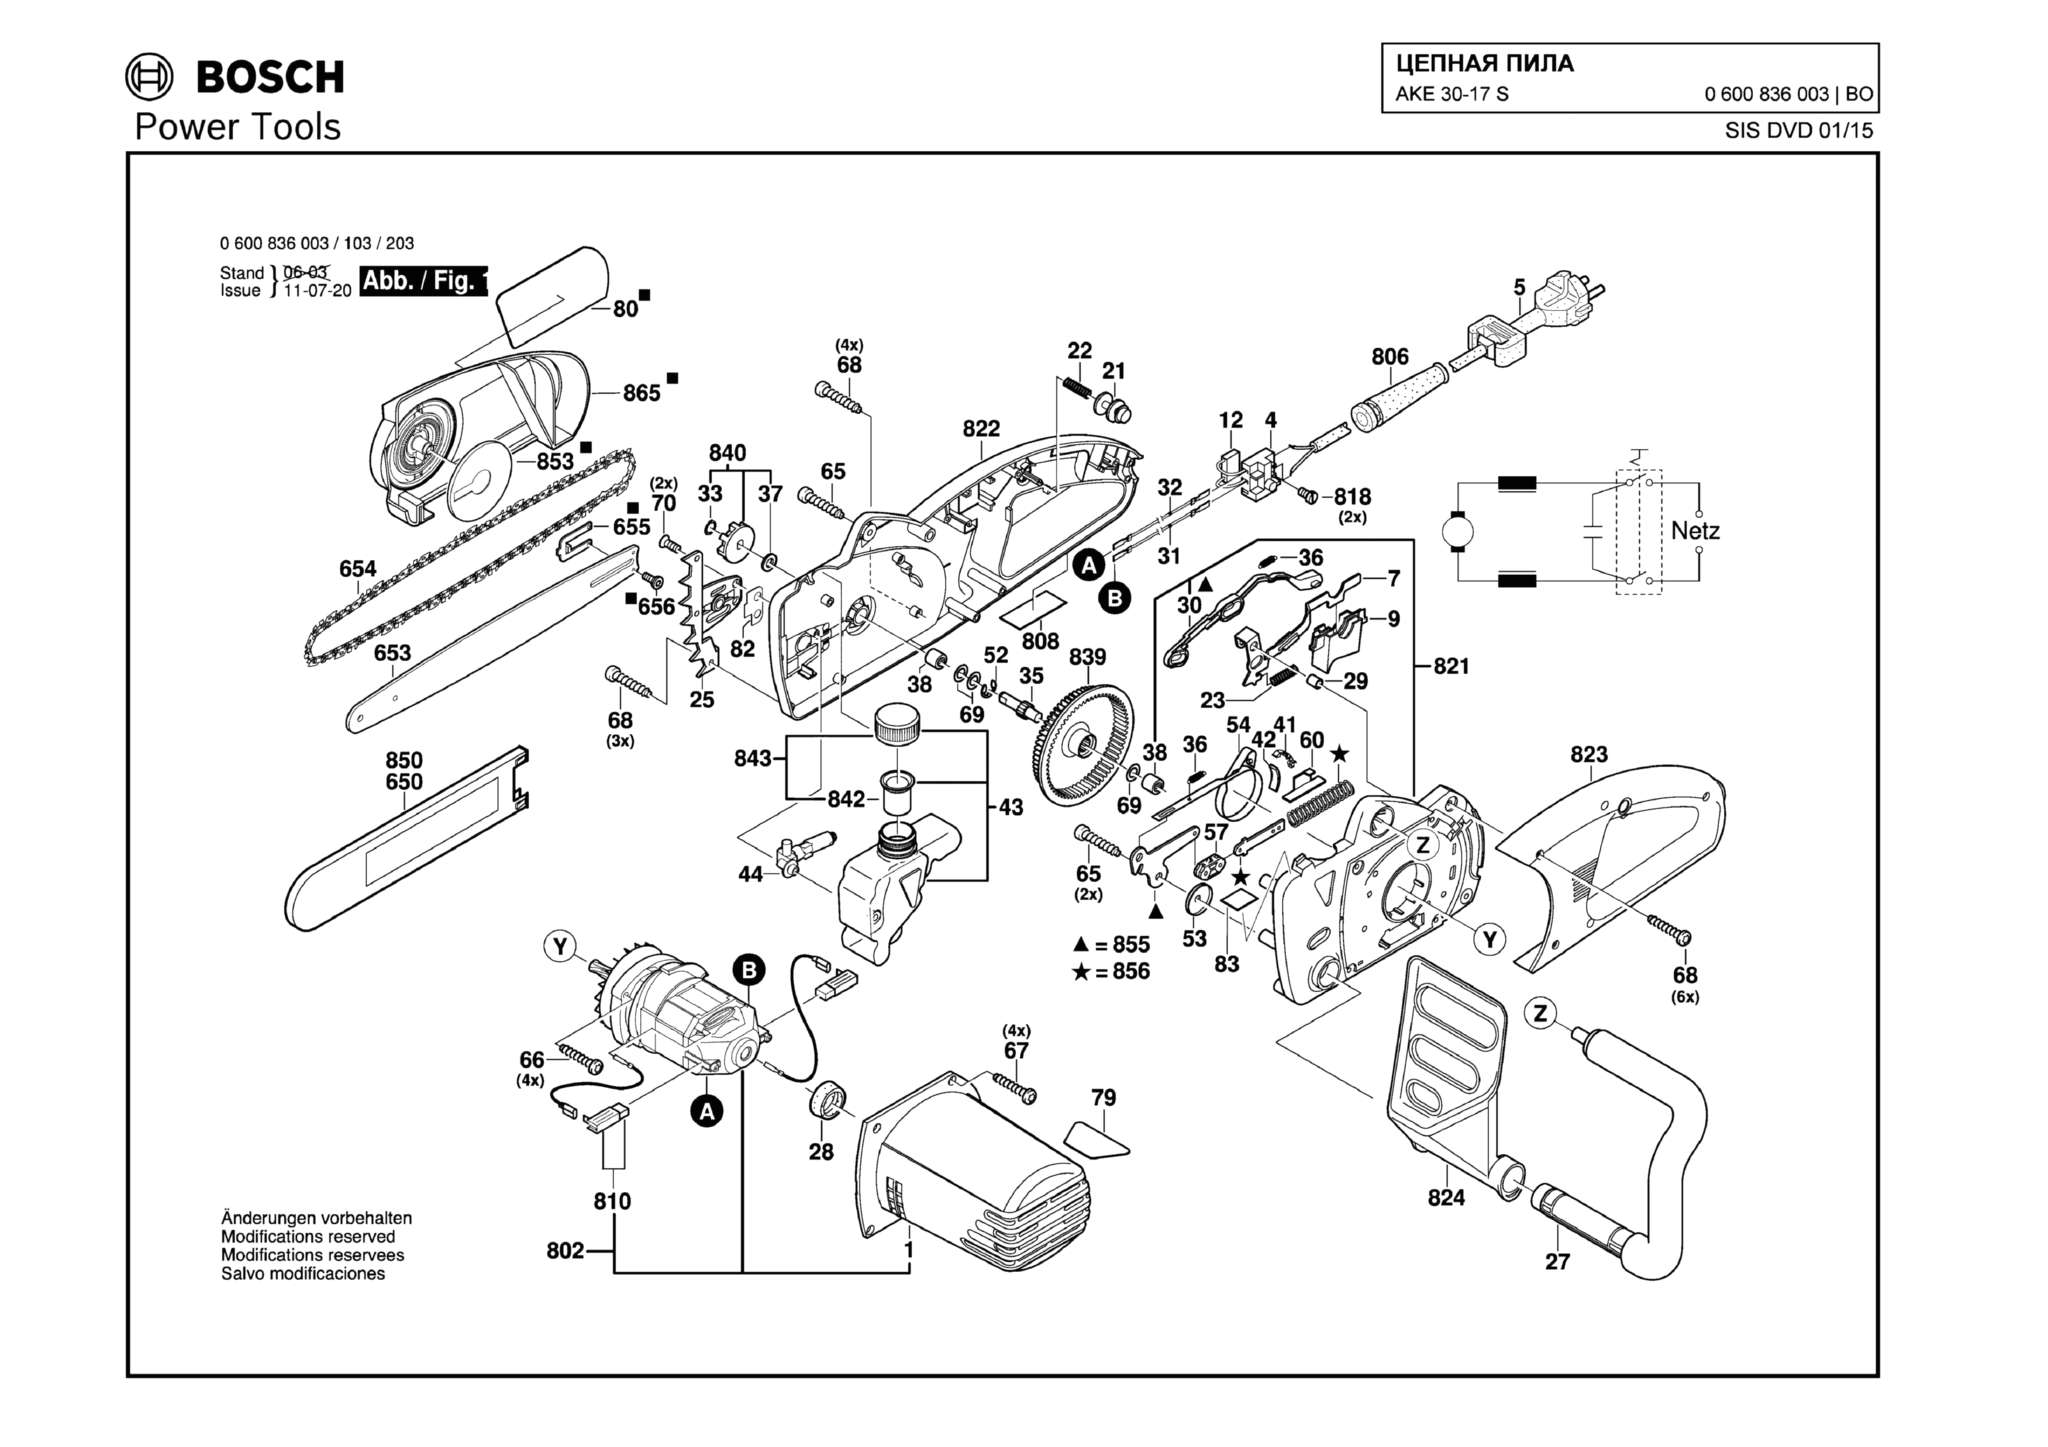 Запчасти, схема и деталировка Bosch AKE 30-17 S (ТИП 0600836003)